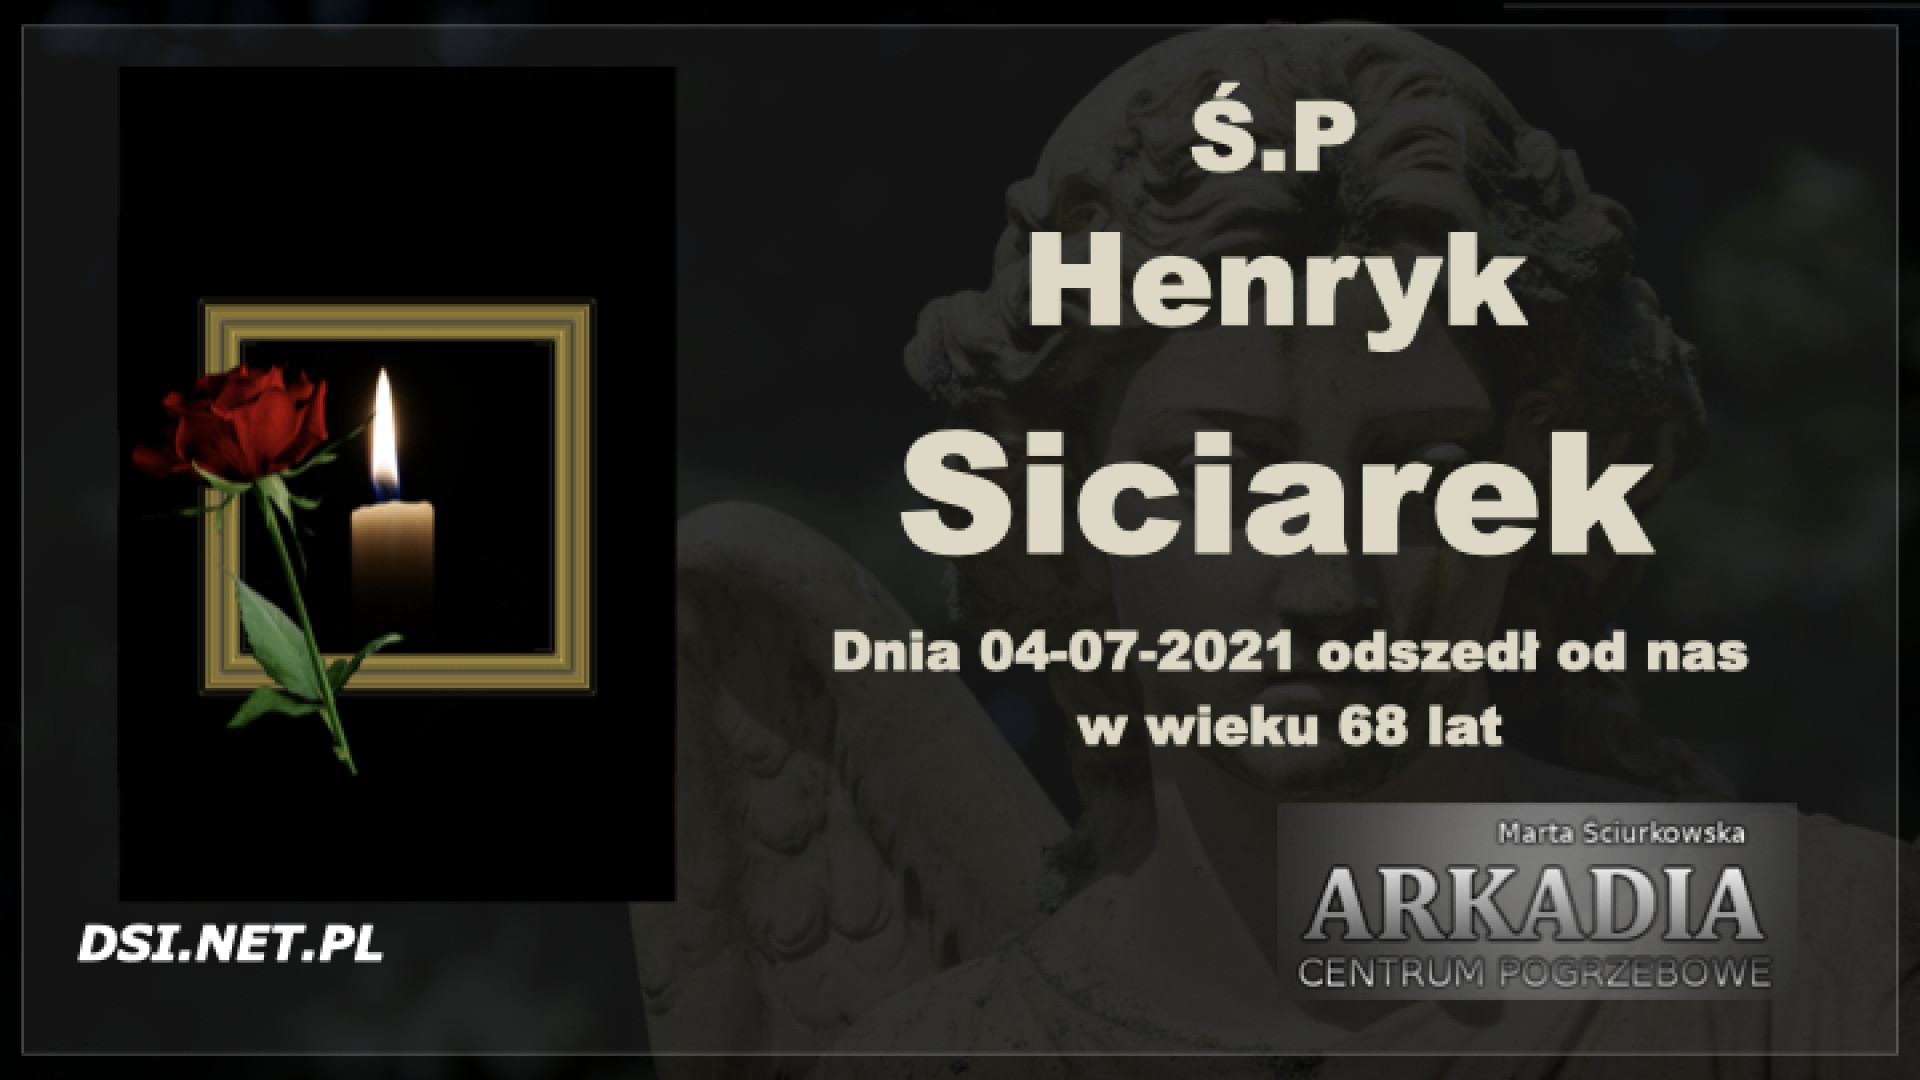 Ś.P. Henryk Siciarek